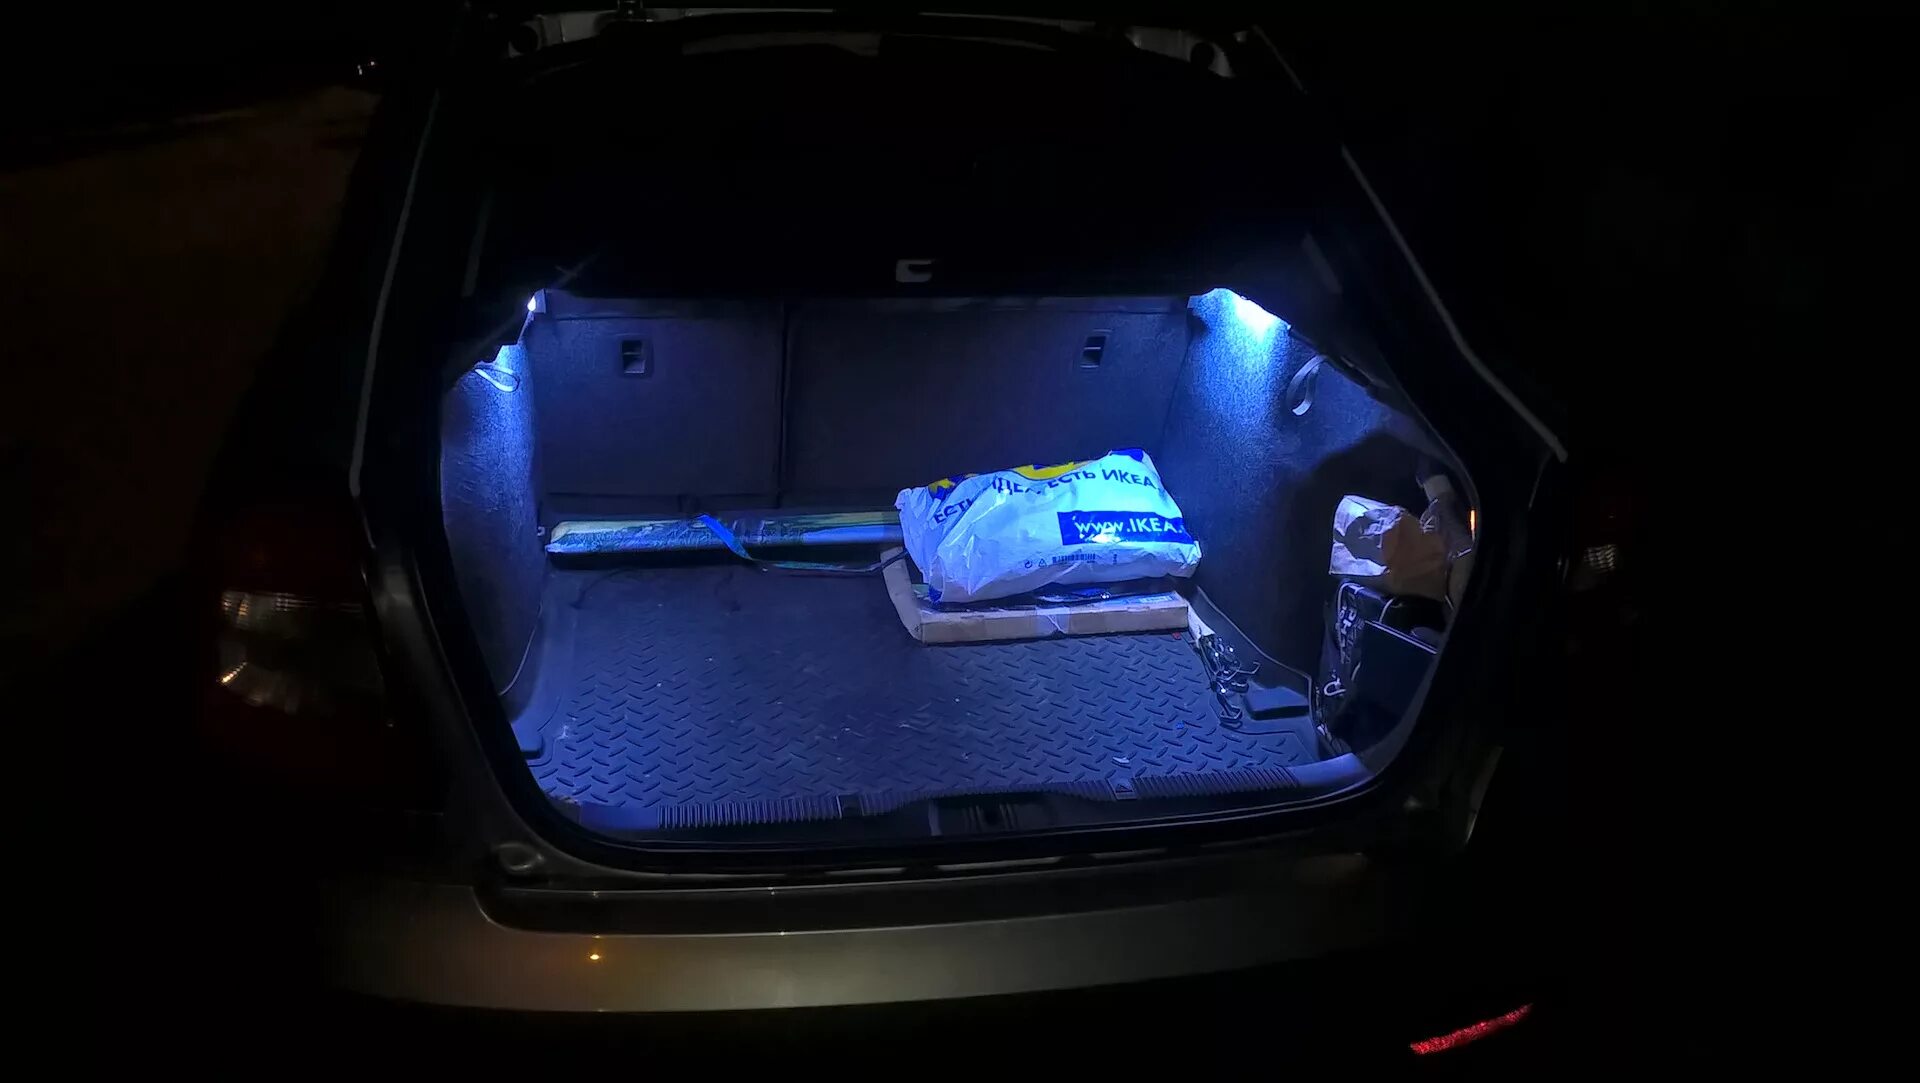 Подсветка в багажнике на БМВ е36. Подсветка багажника BMW e39. Подсветка багажника BMW e36 Compact. Шкода подсветка багажника